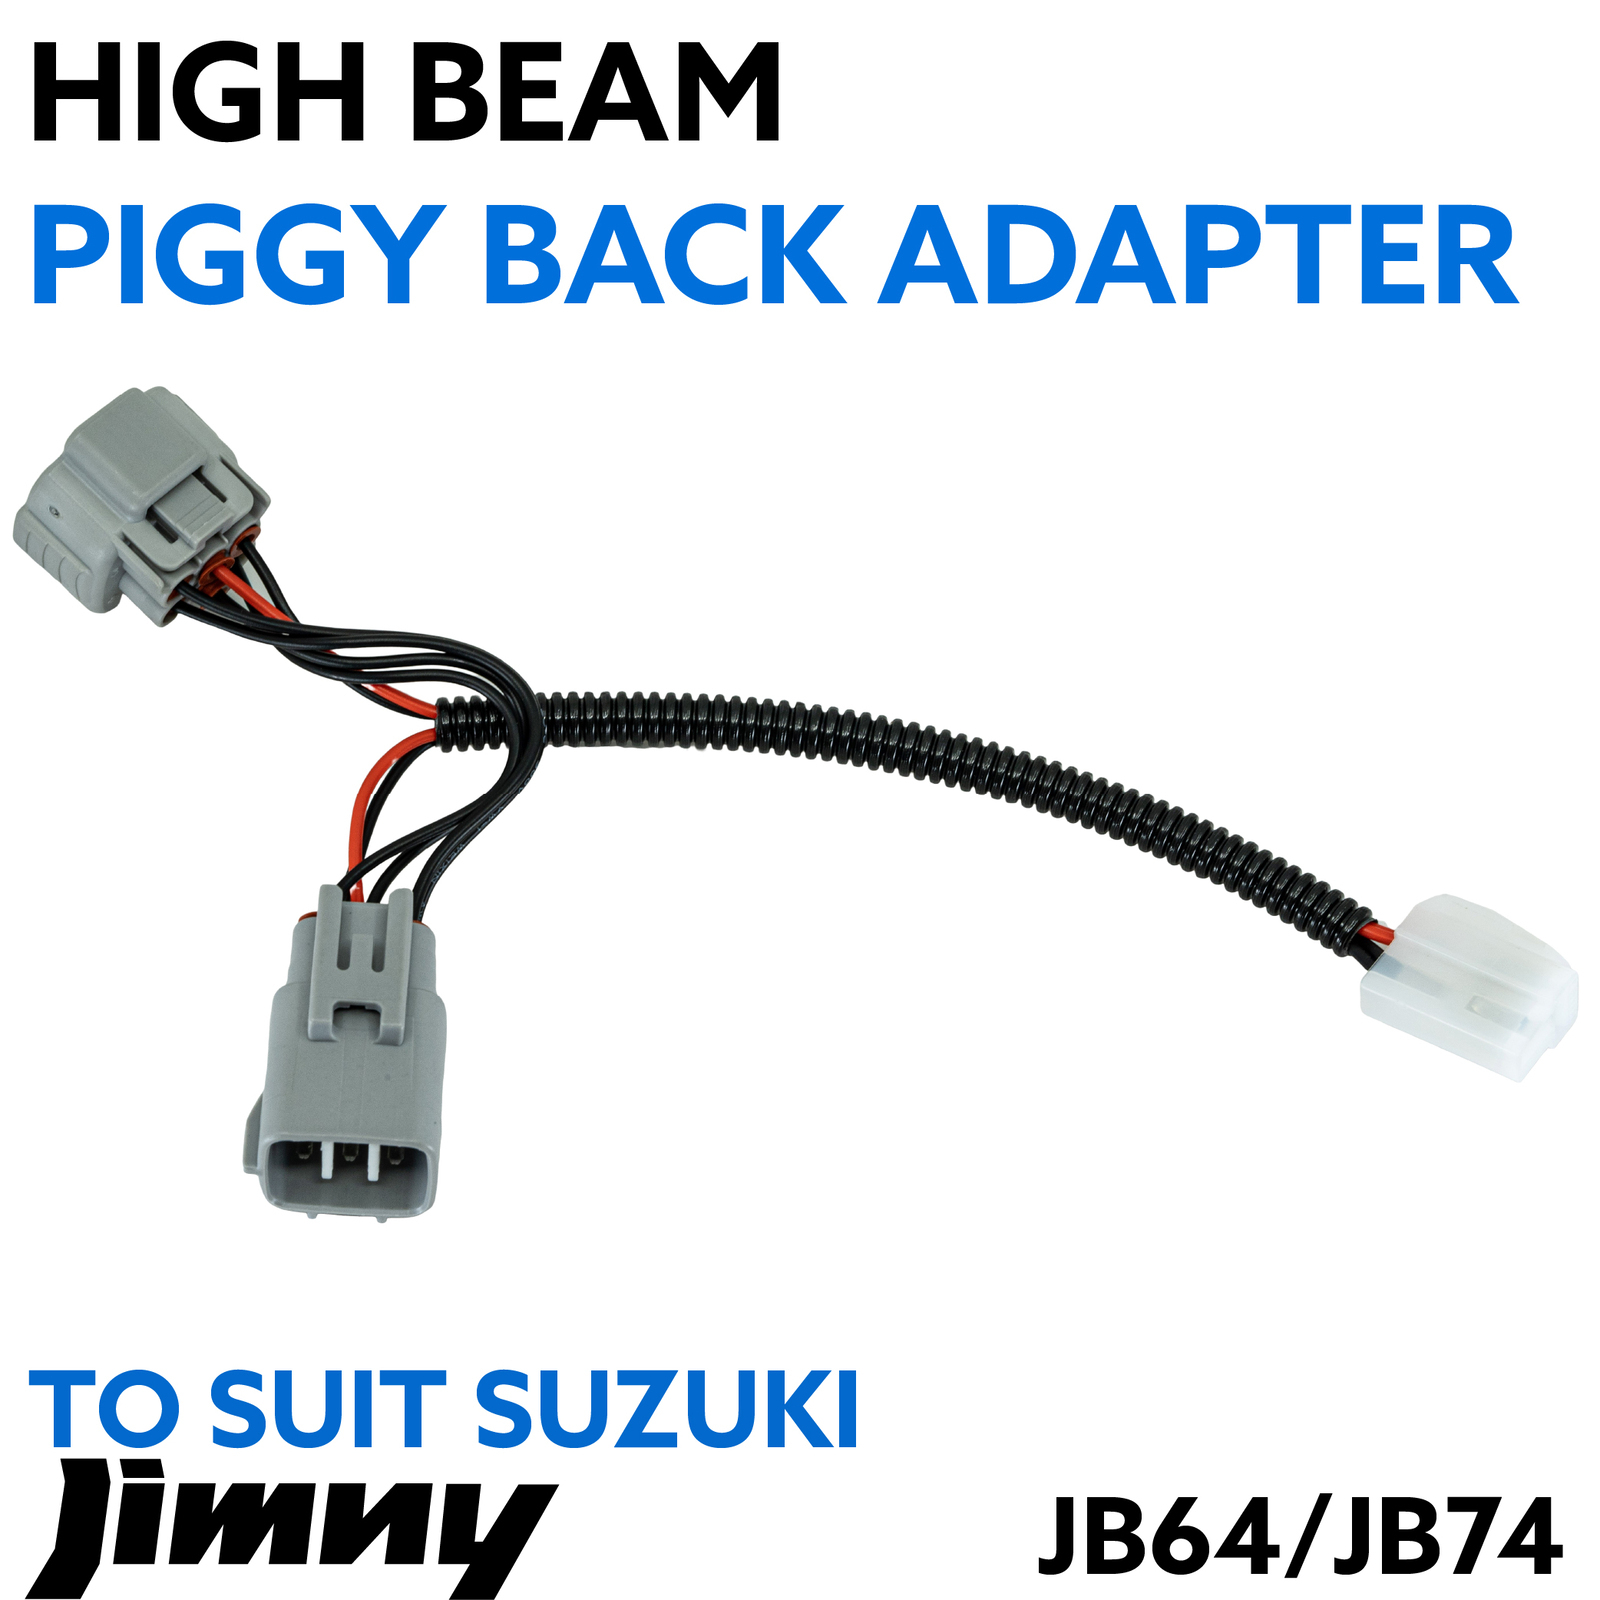 Suzuki Jimny Piggy Back Adapter (JB64W/JB74W)